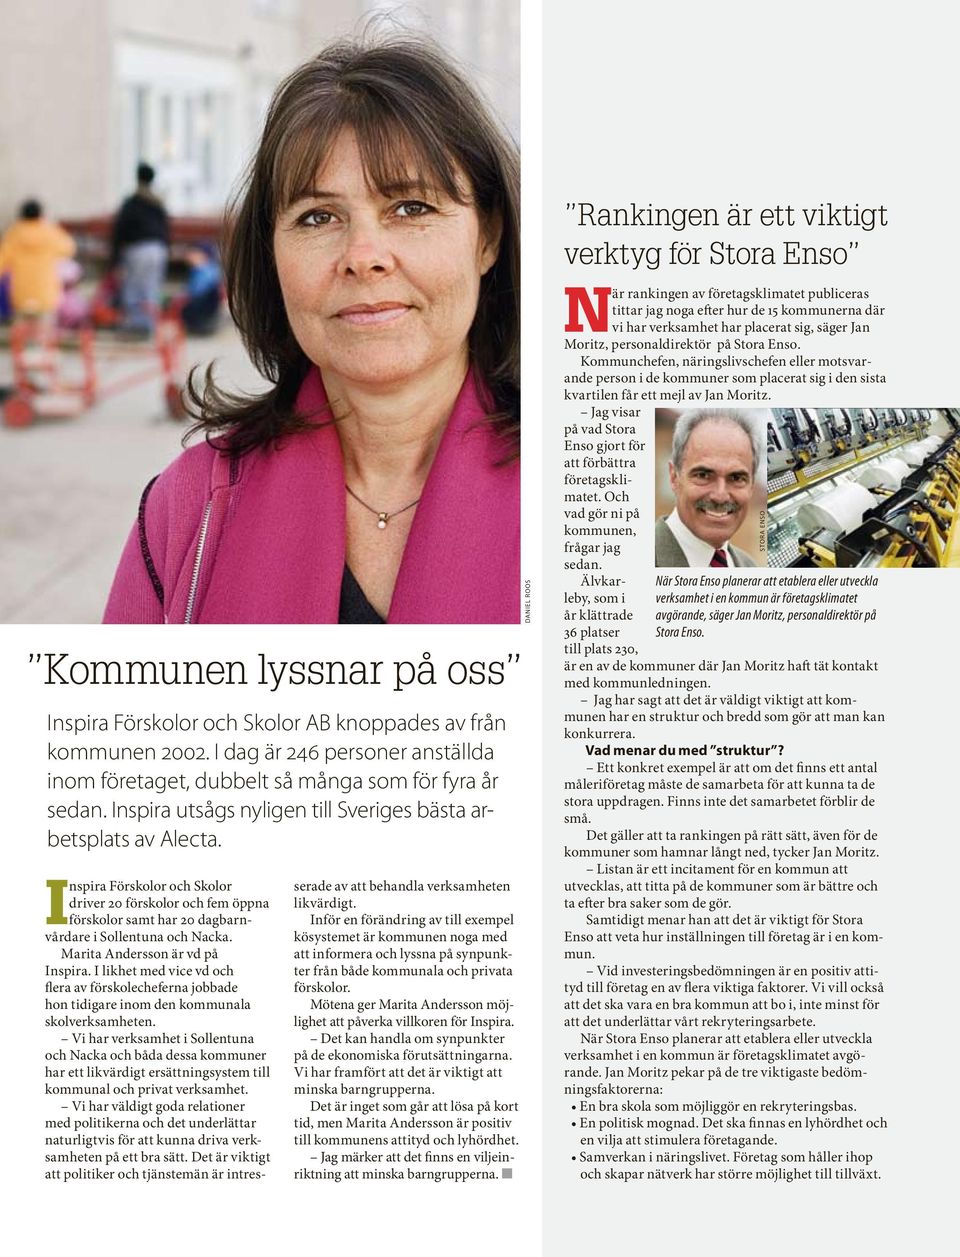 Inspira Förskolor och Skolor driver 20 förskolor och fem öppna förskolor samt har 20 dagbarnvårdare i Sollentuna och Nacka. Marita Andersson är vd på Inspira.